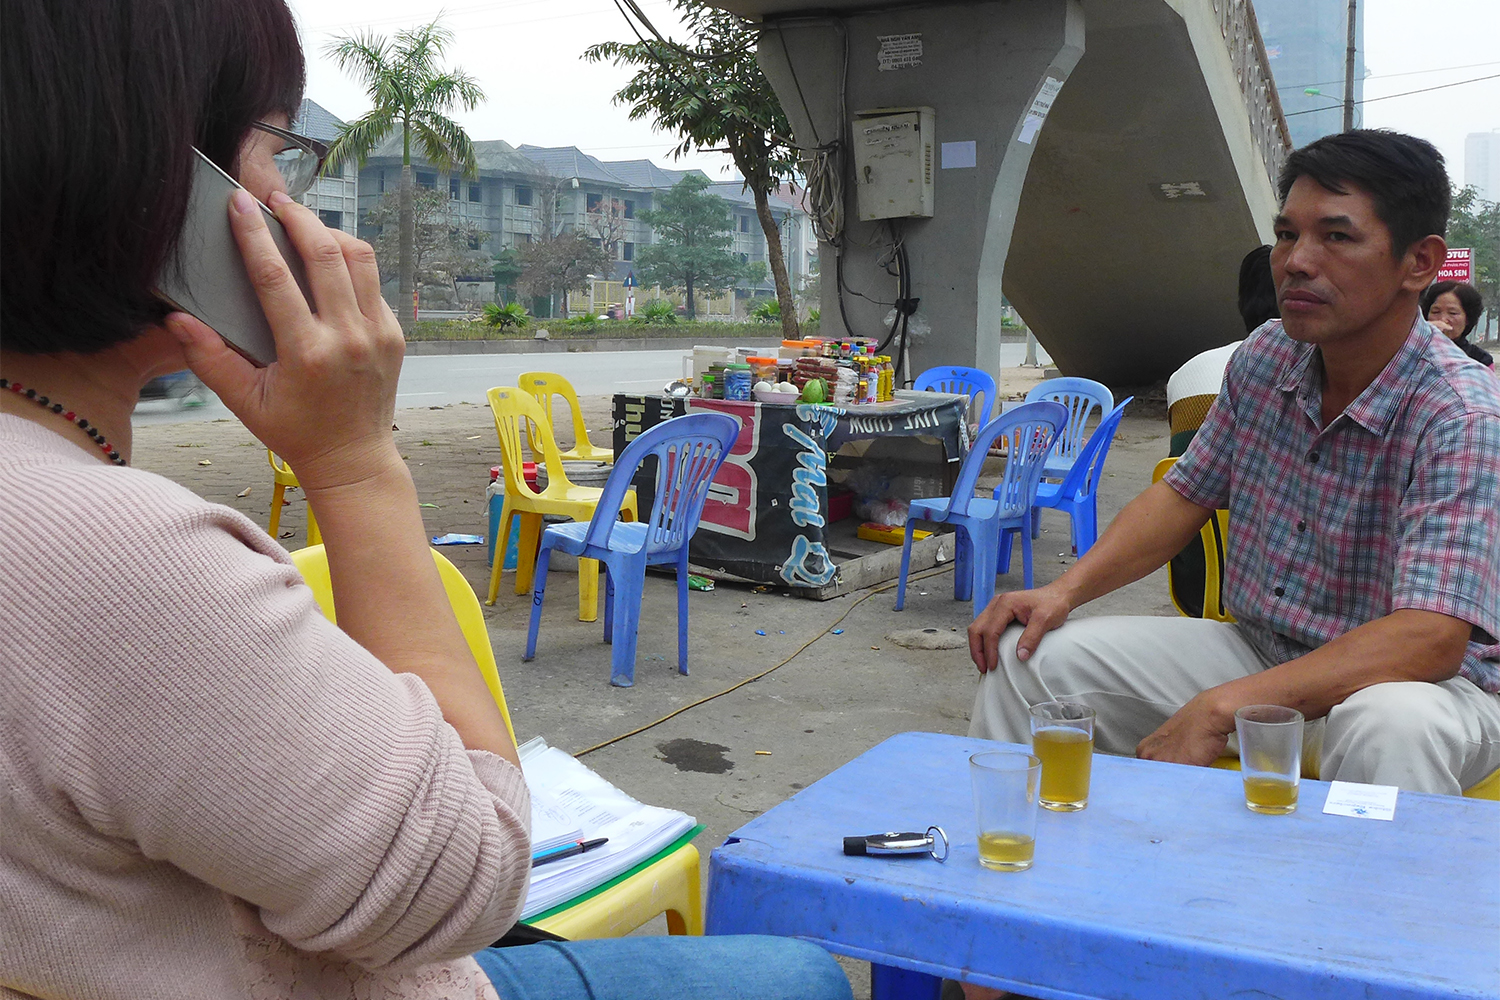 Quynh Huong Do, professeure de français, a pris un thé avec nous pour faire la traduction. C’est sa voix que vous entendez dans les sons !